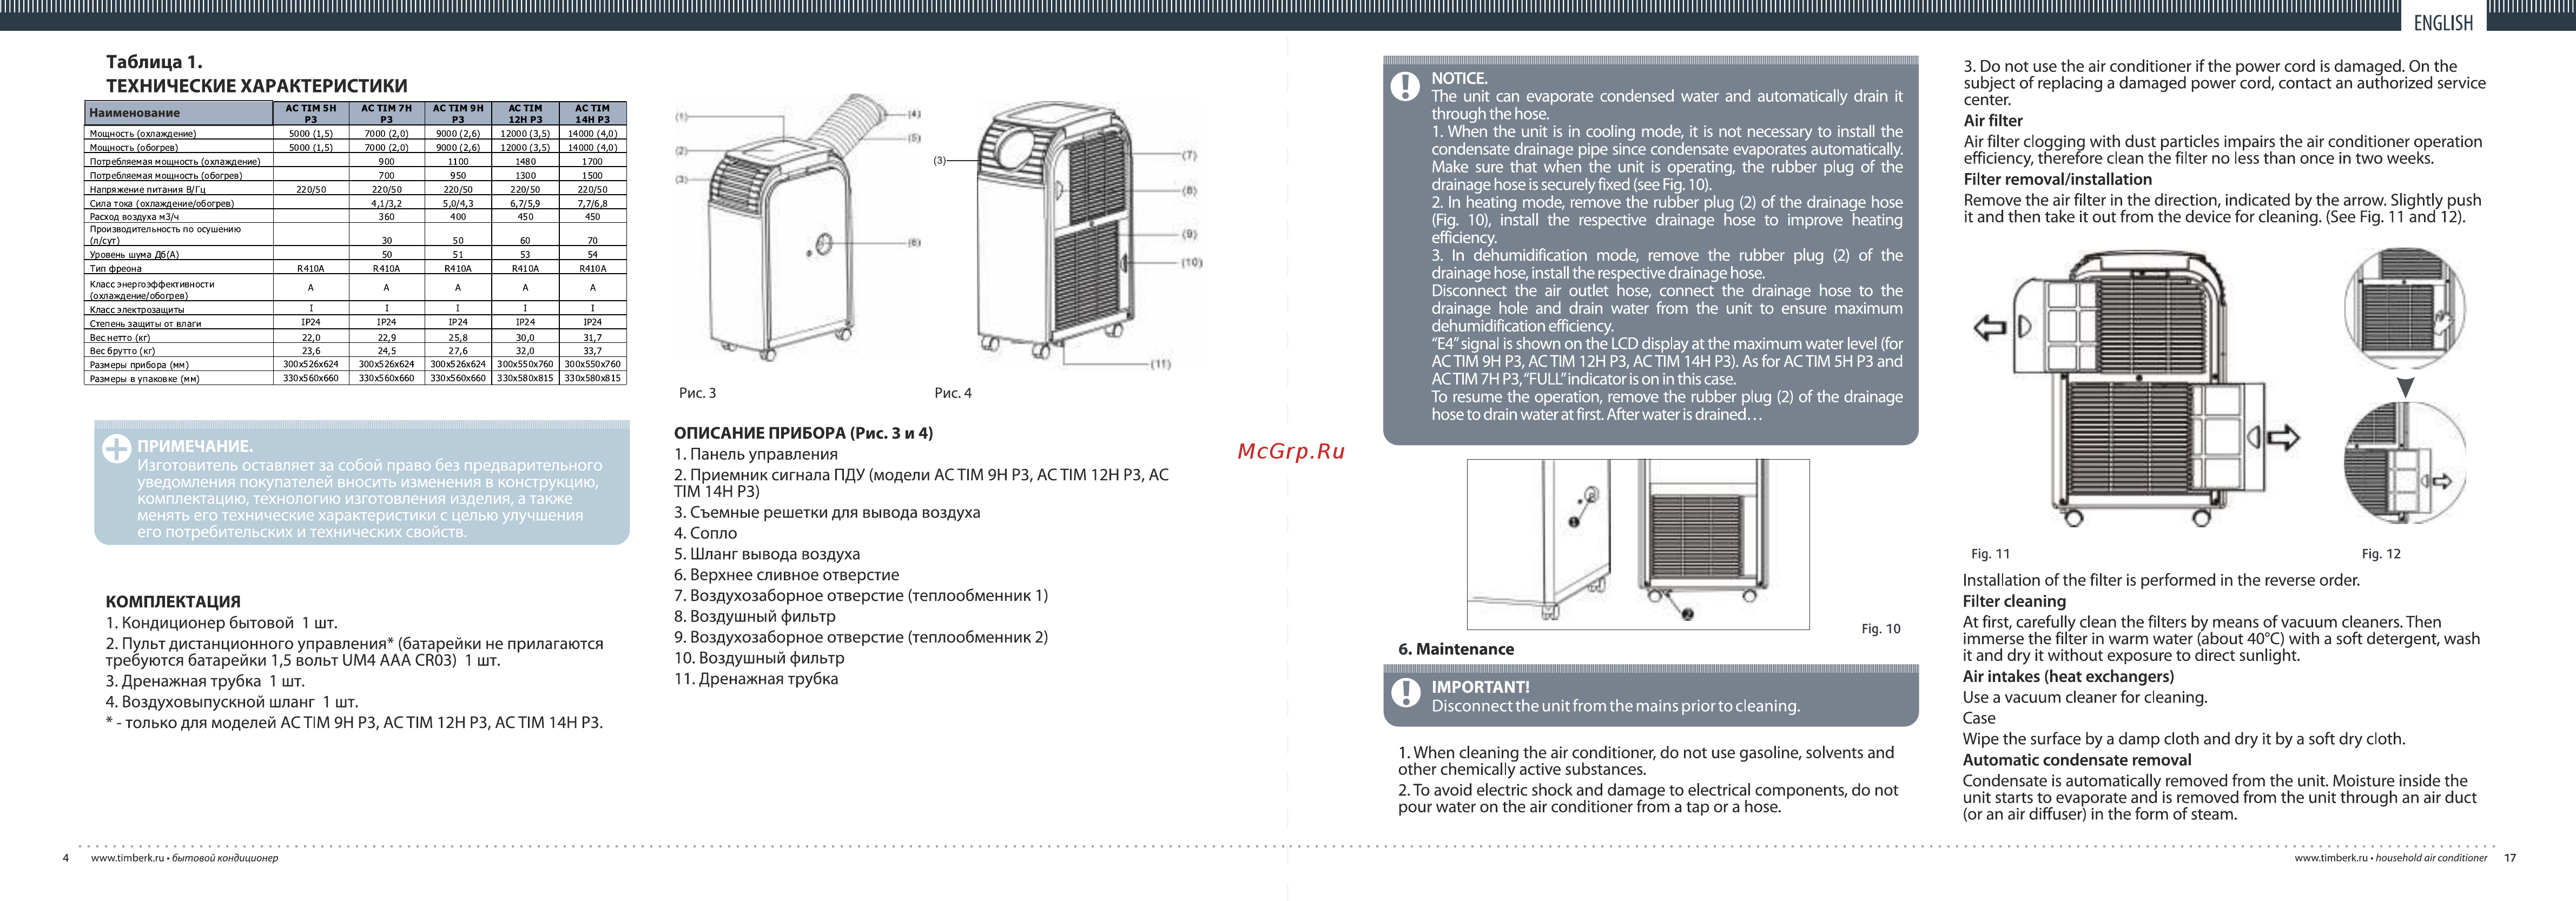 Кондиционеры и сплит-системы aermec: отзывы, инструкции к пульту управления